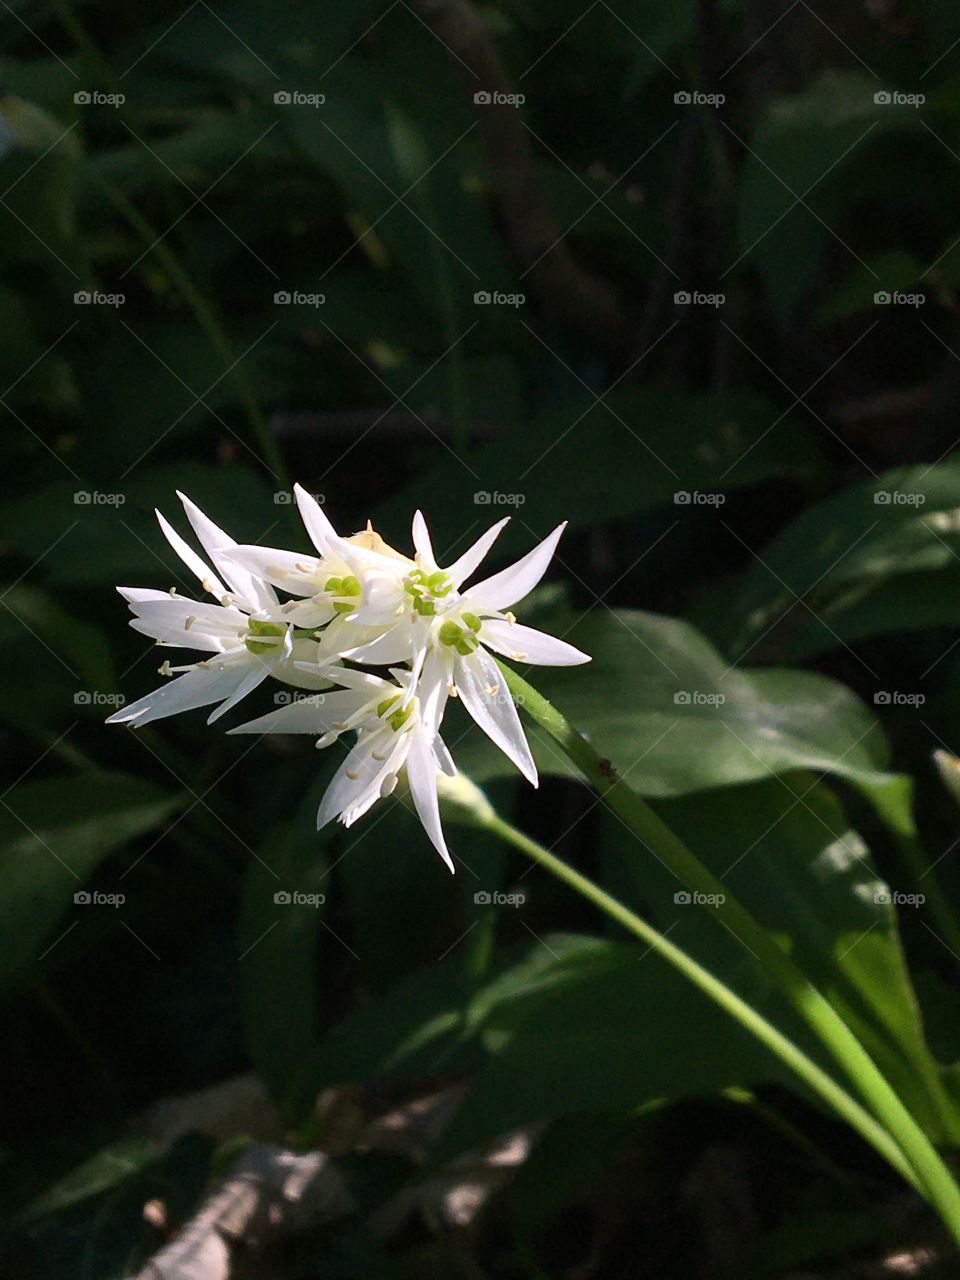 Wild garlic flower in sun